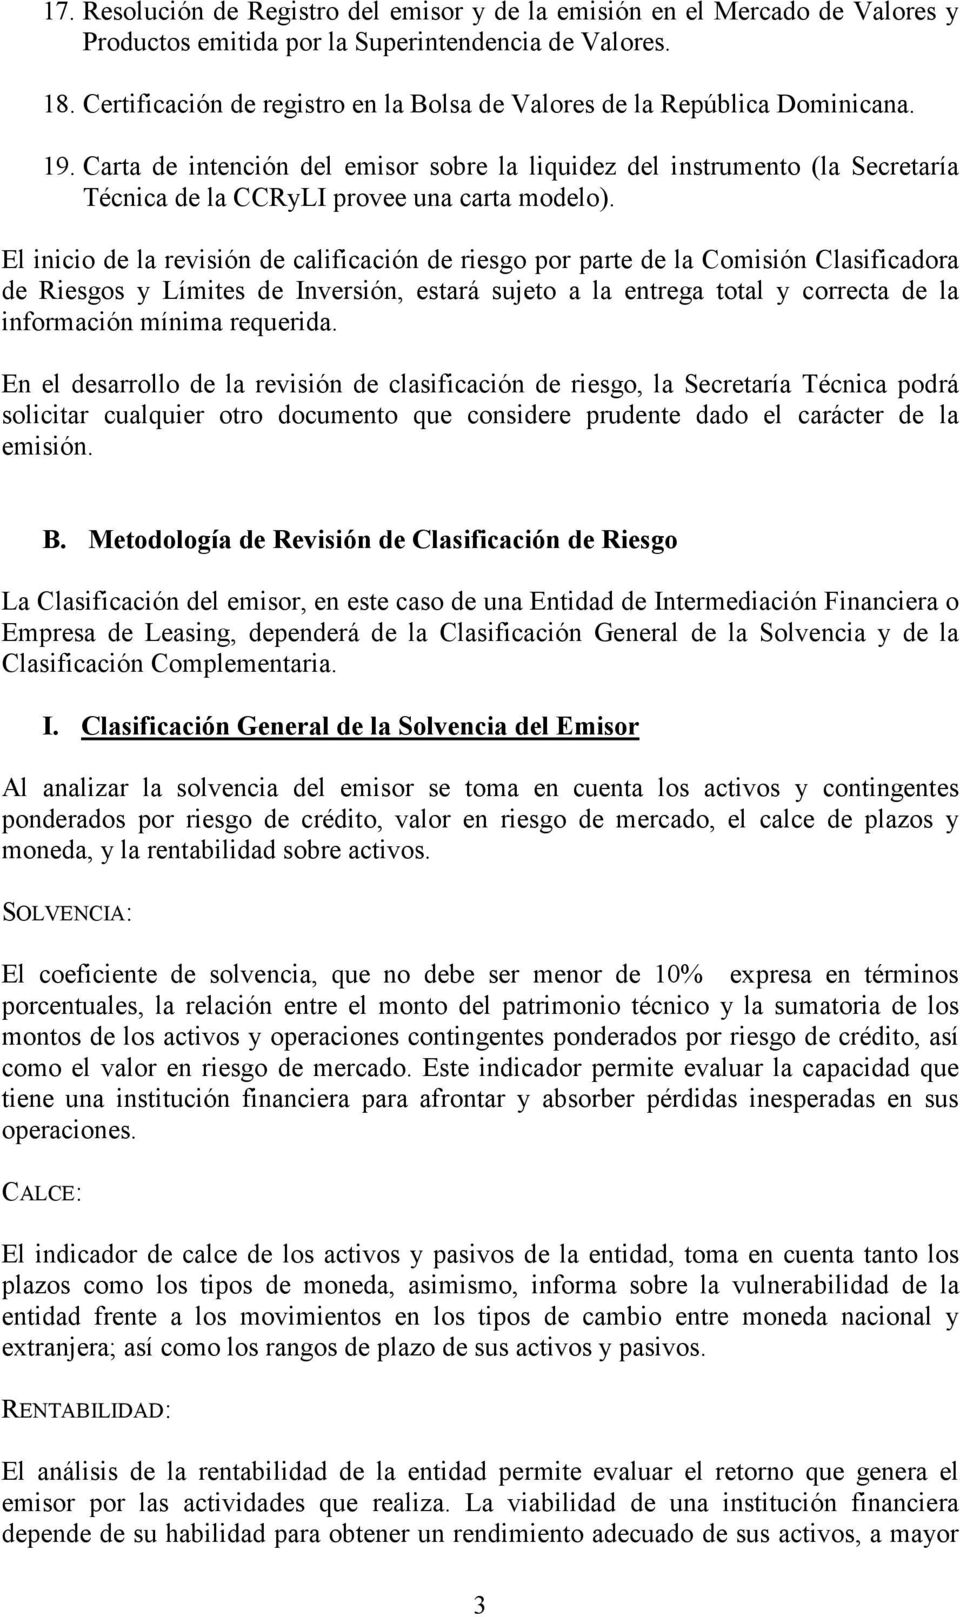 Carta de intención del emisor sobre la liquidez del instrumento (la Secretaría Técnica de la CCRyLI provee una carta modelo).